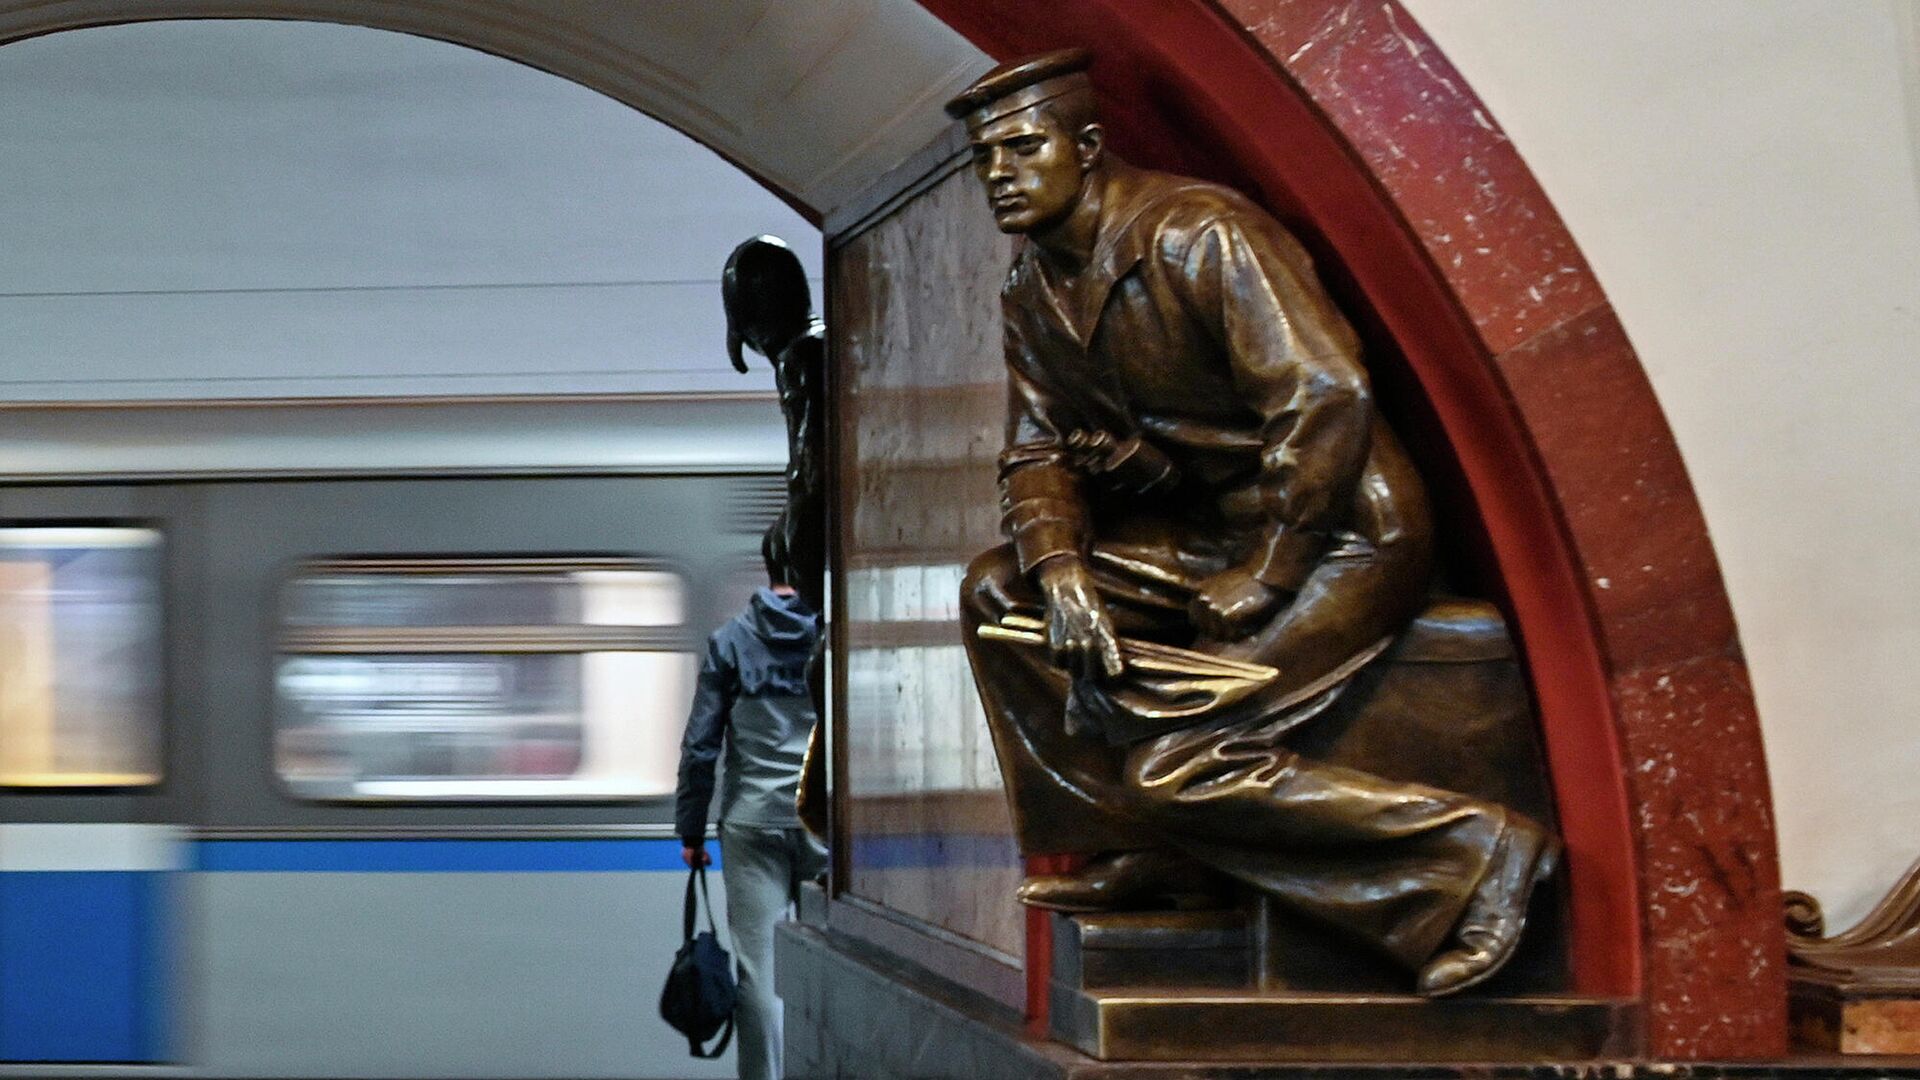  Фигура матрос-сигнальщик на станции метро Площадь революции в Москве  - РИА Новости, 1920, 06.05.2021